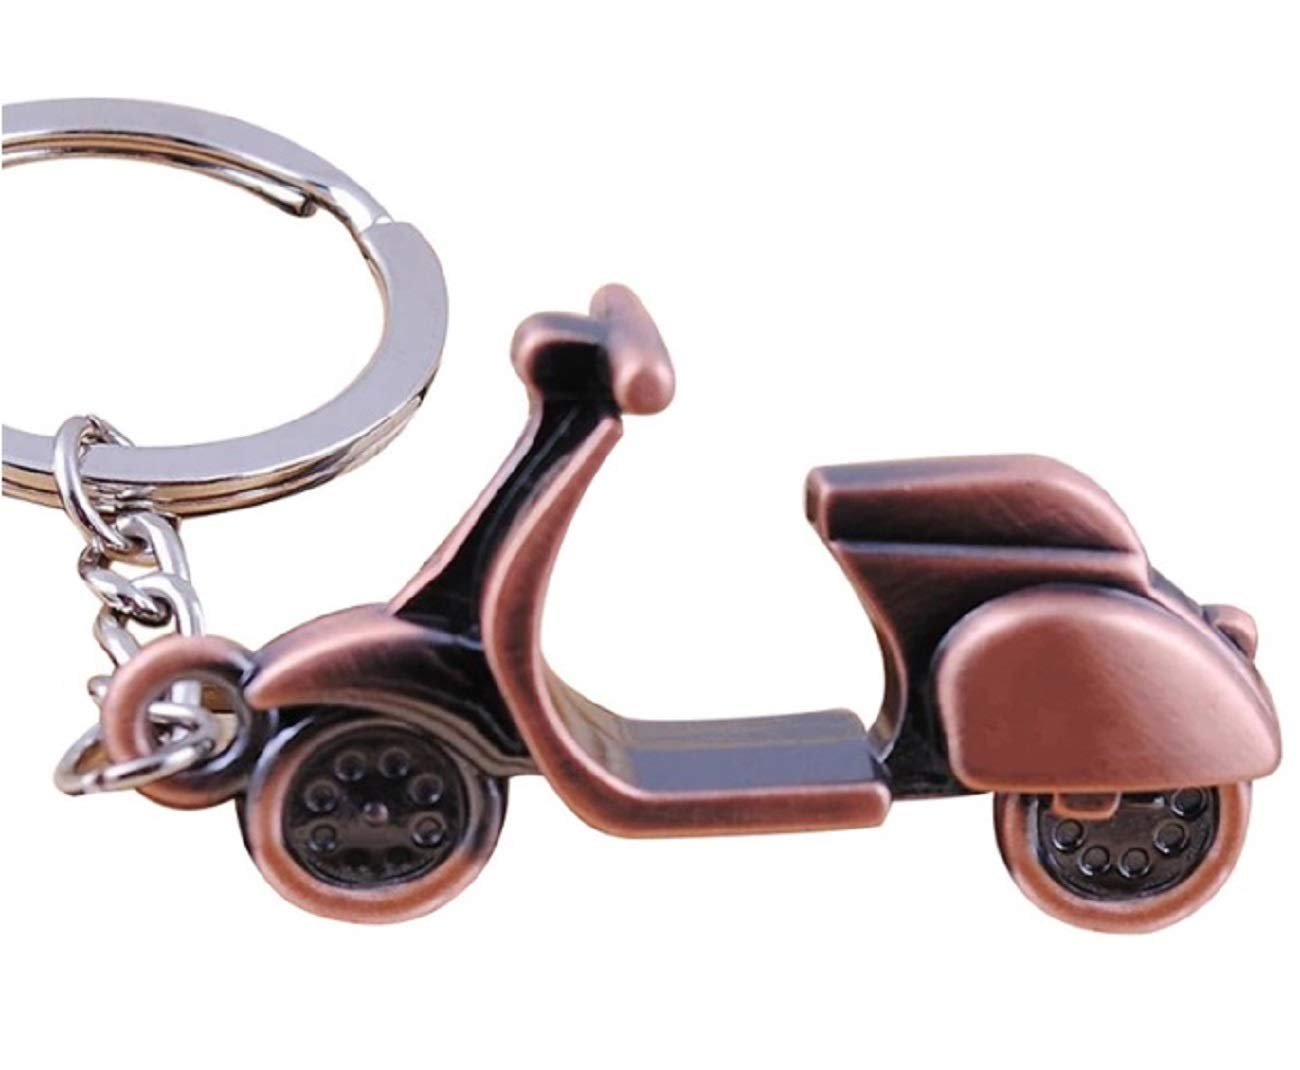 Sportigo ® Motorroller Schlüsselanhänger/Roller in der Farbe Bronze/Retro Look/Scooter Mofa Bike Geschenk Geschenkidee von Sportigo